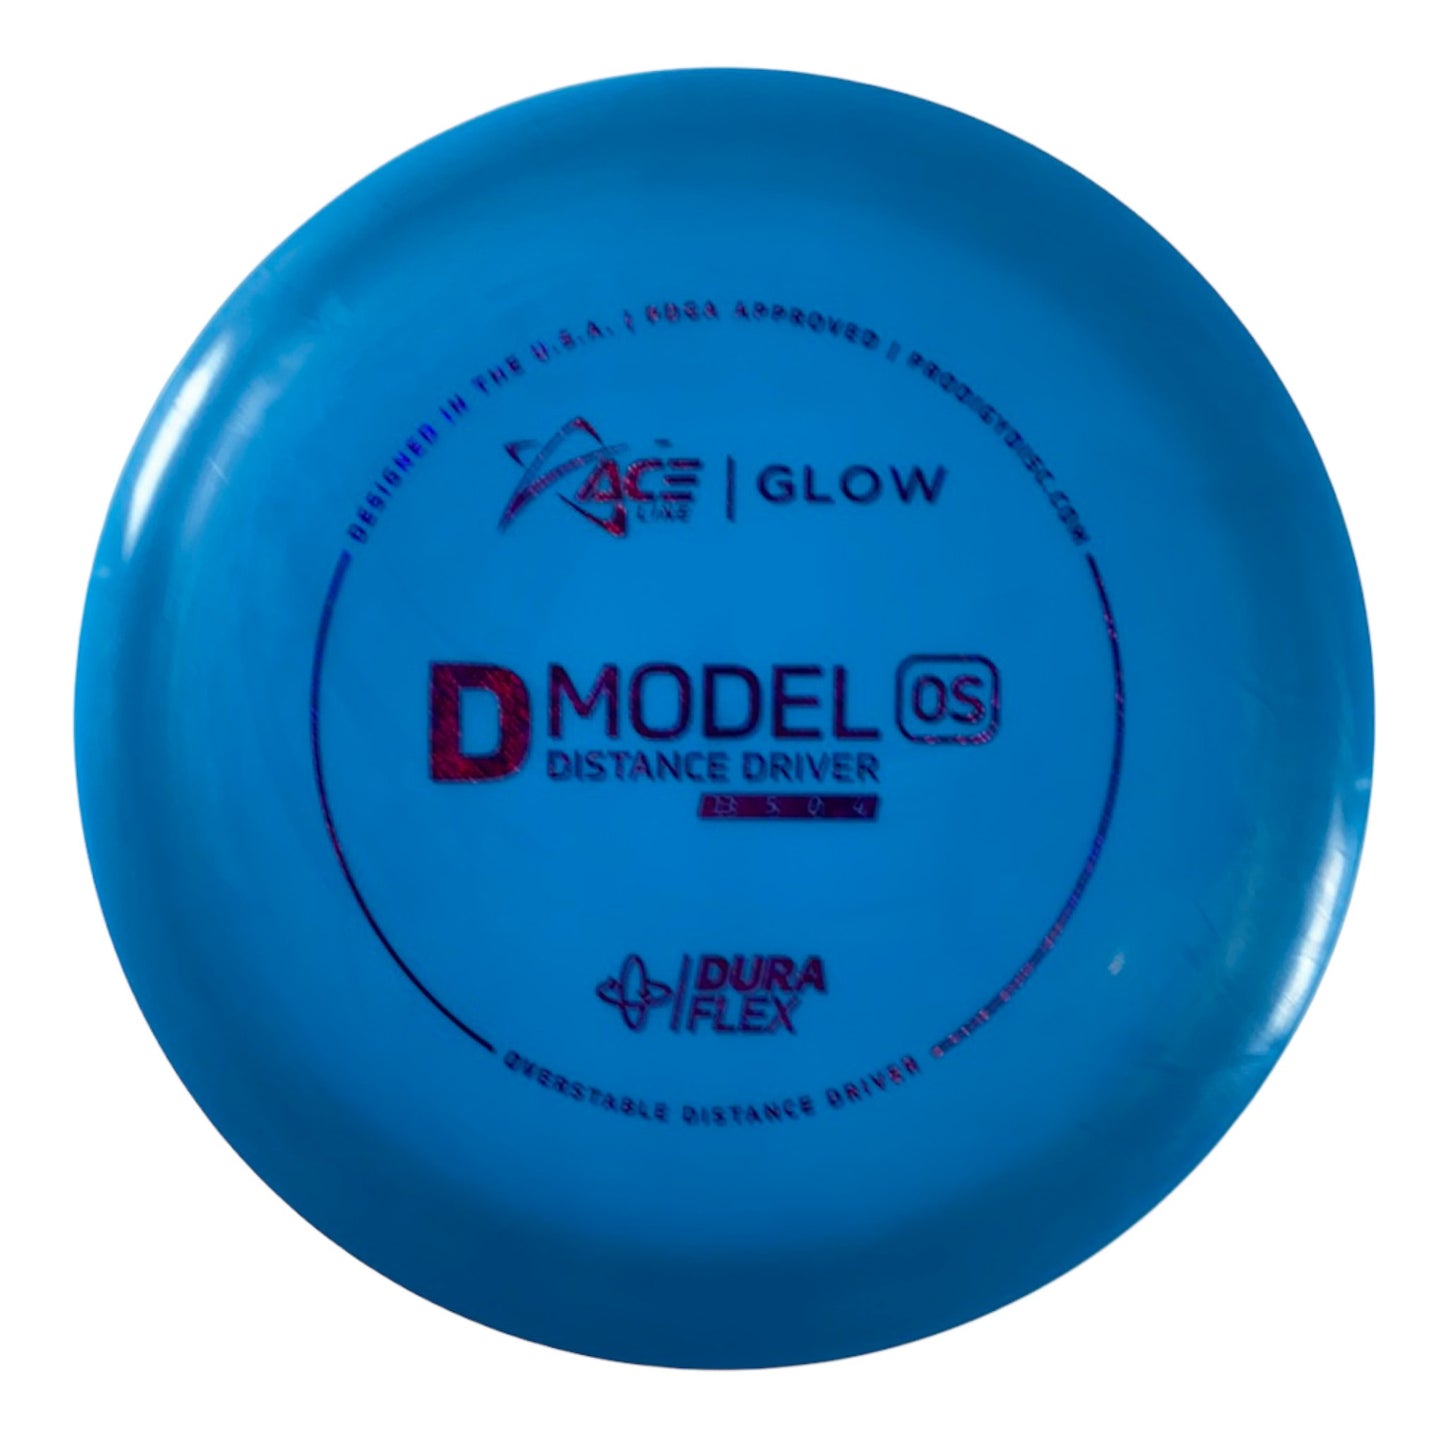 Prodigy Disc D Model OS | Dura Flex Glow | Blue/Pink 174g Disc Golf